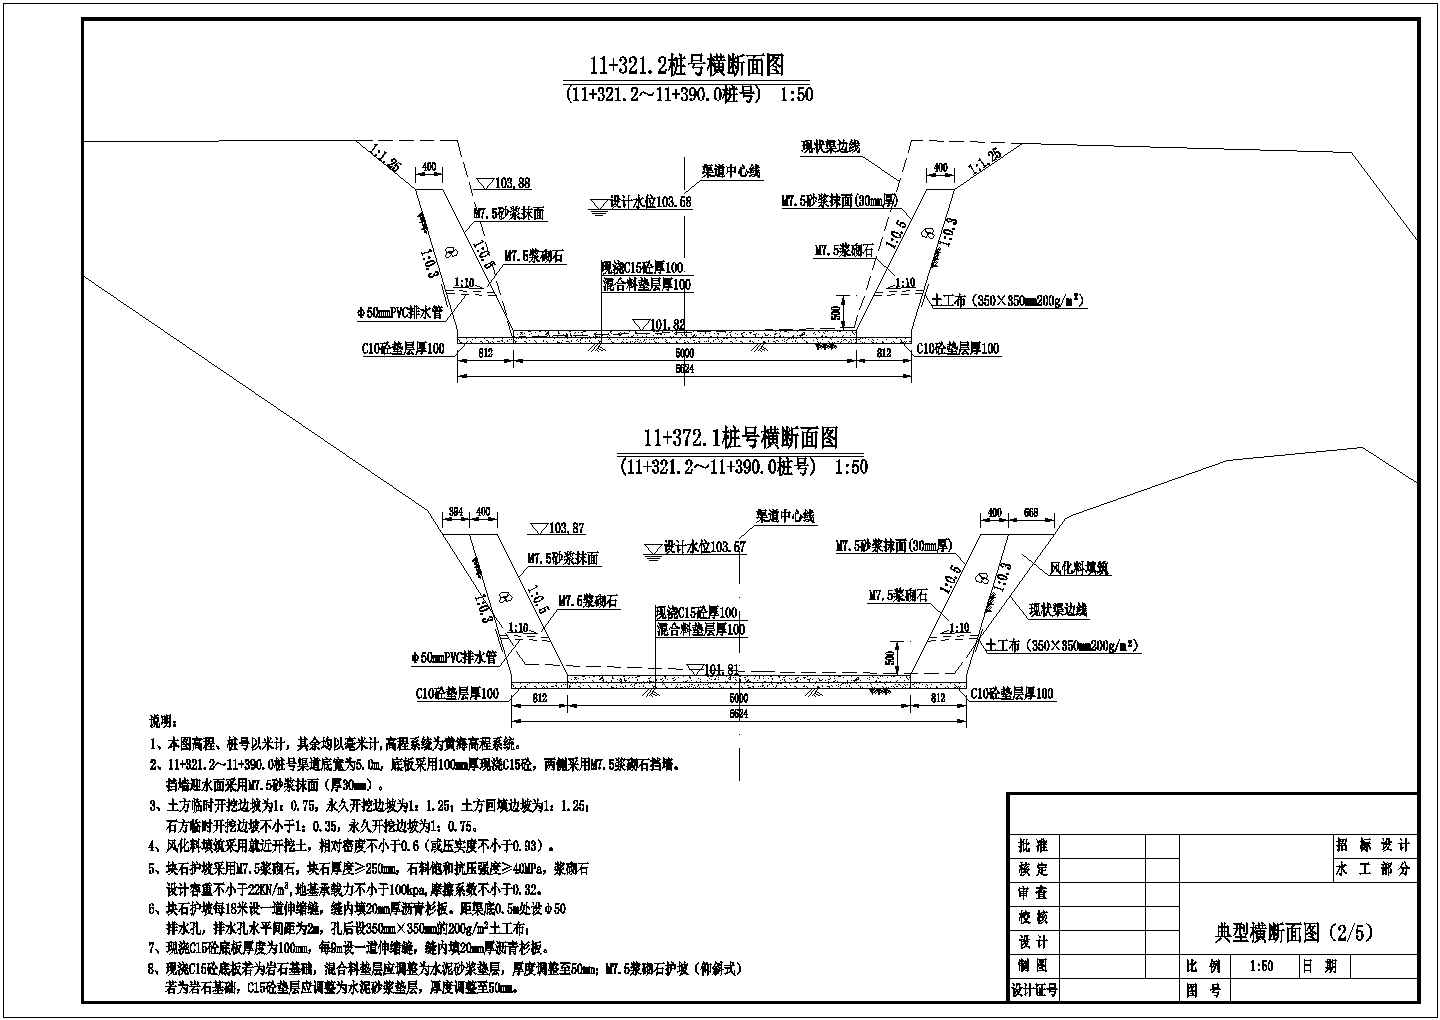 【江西】灌区输水渠道节水改造工程施工图(干渠)